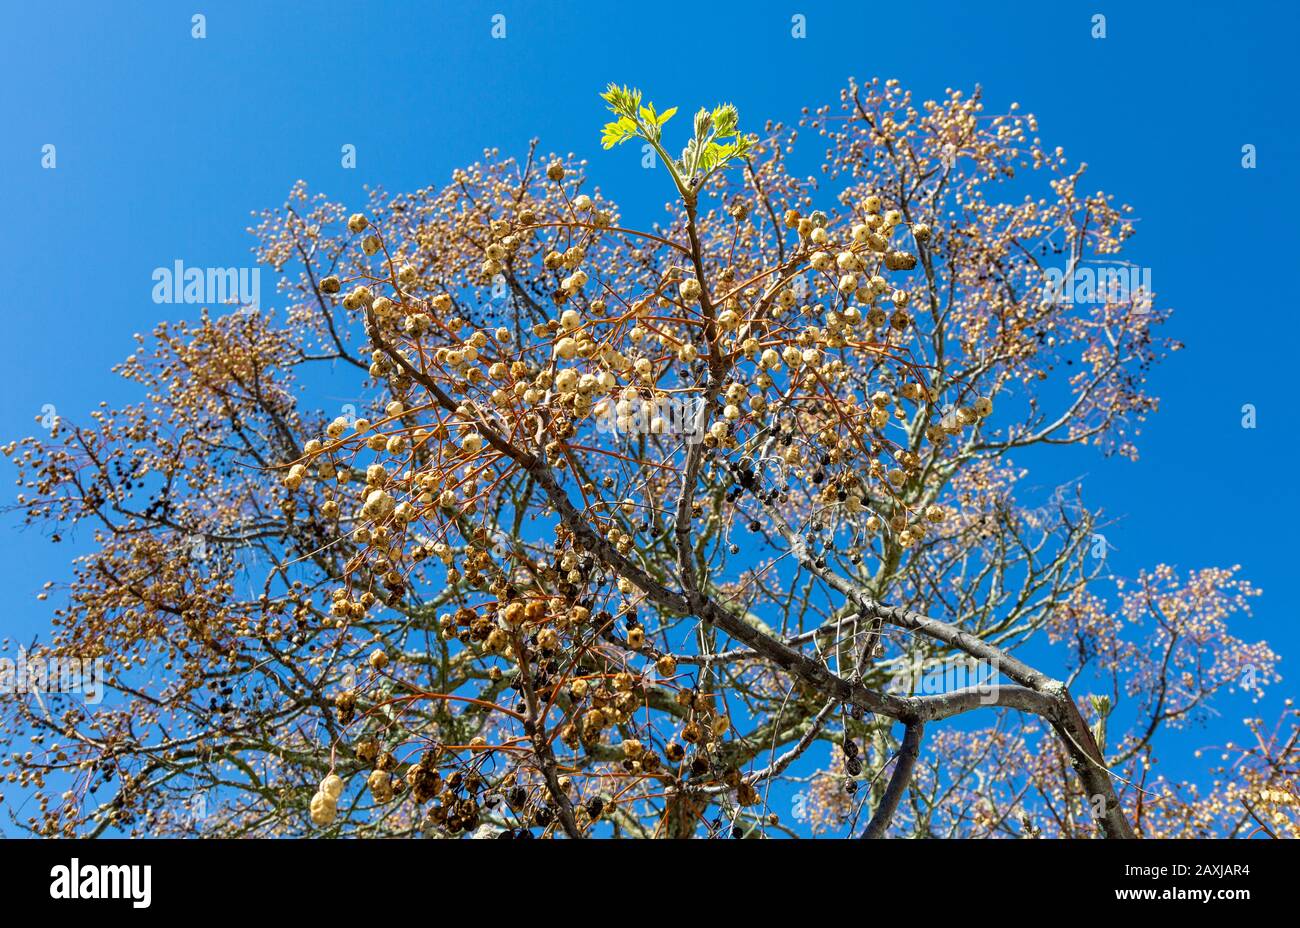 Laubbaum gegen tiefblauen Himmel mit nur einem Ast, der grüne Triebe neuen Springwuchses zeigt, hängen getrocknete Fruchtkugeln von anderen Ästen. Stockfoto